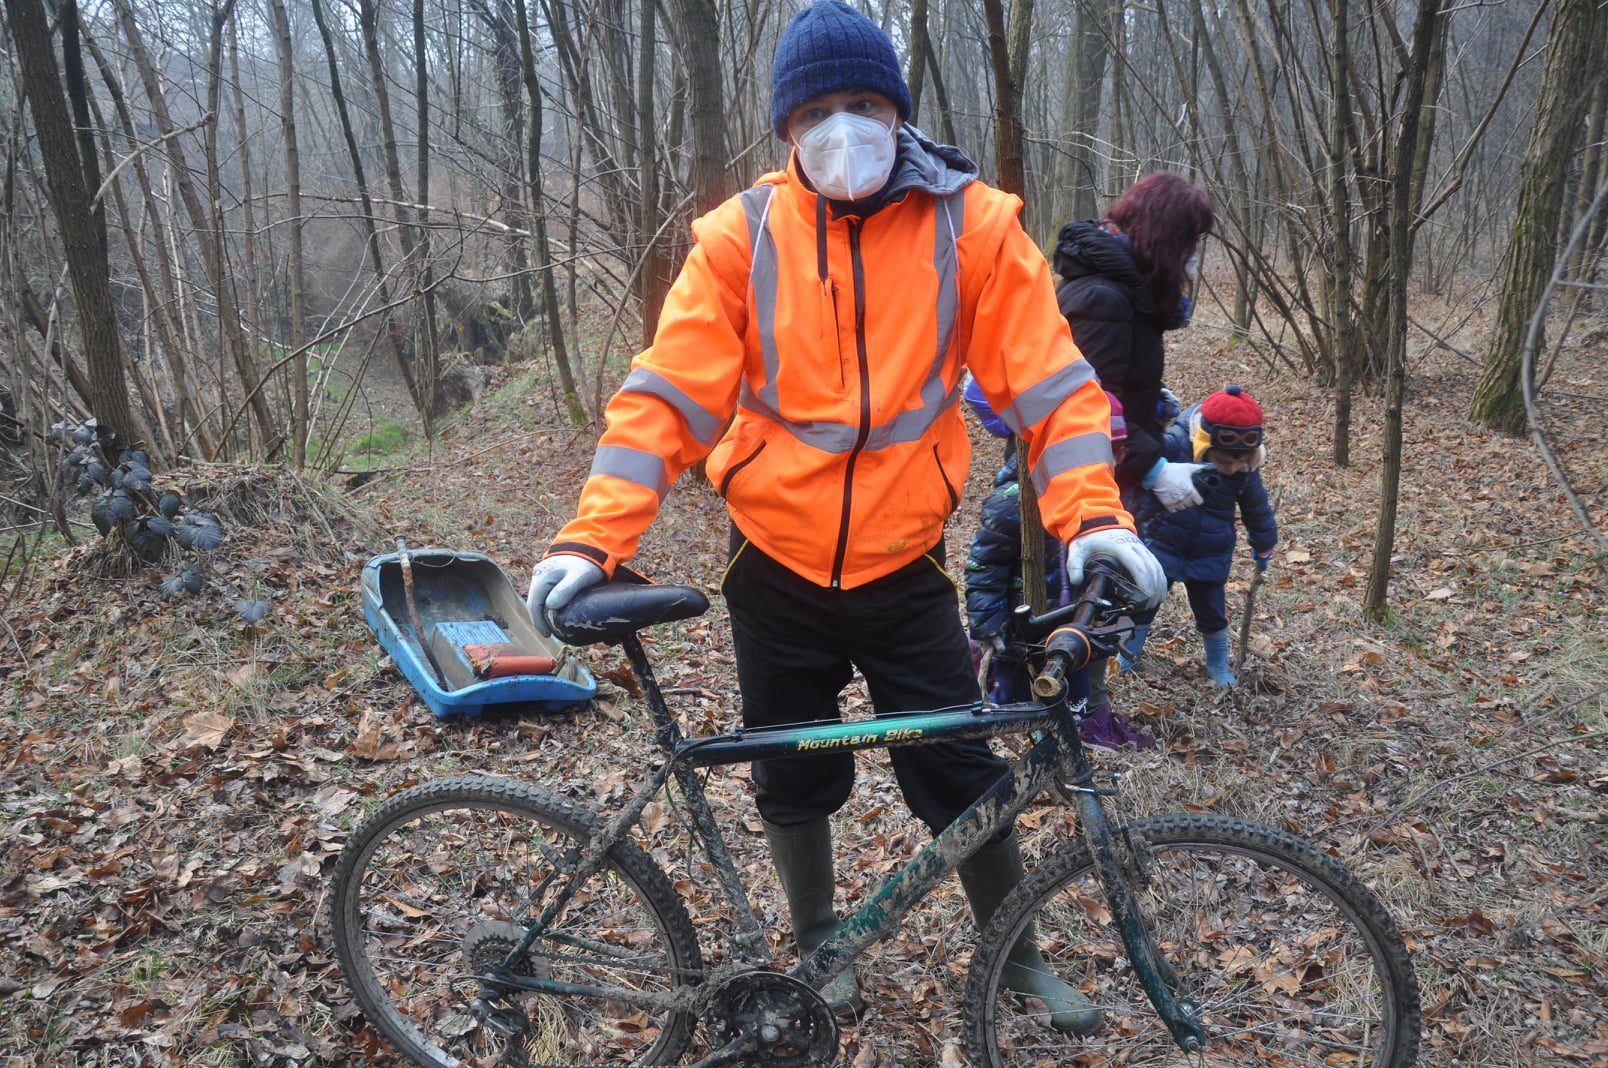 Pulizie nel bosco a Ceriano, di chi è la mountain bike?